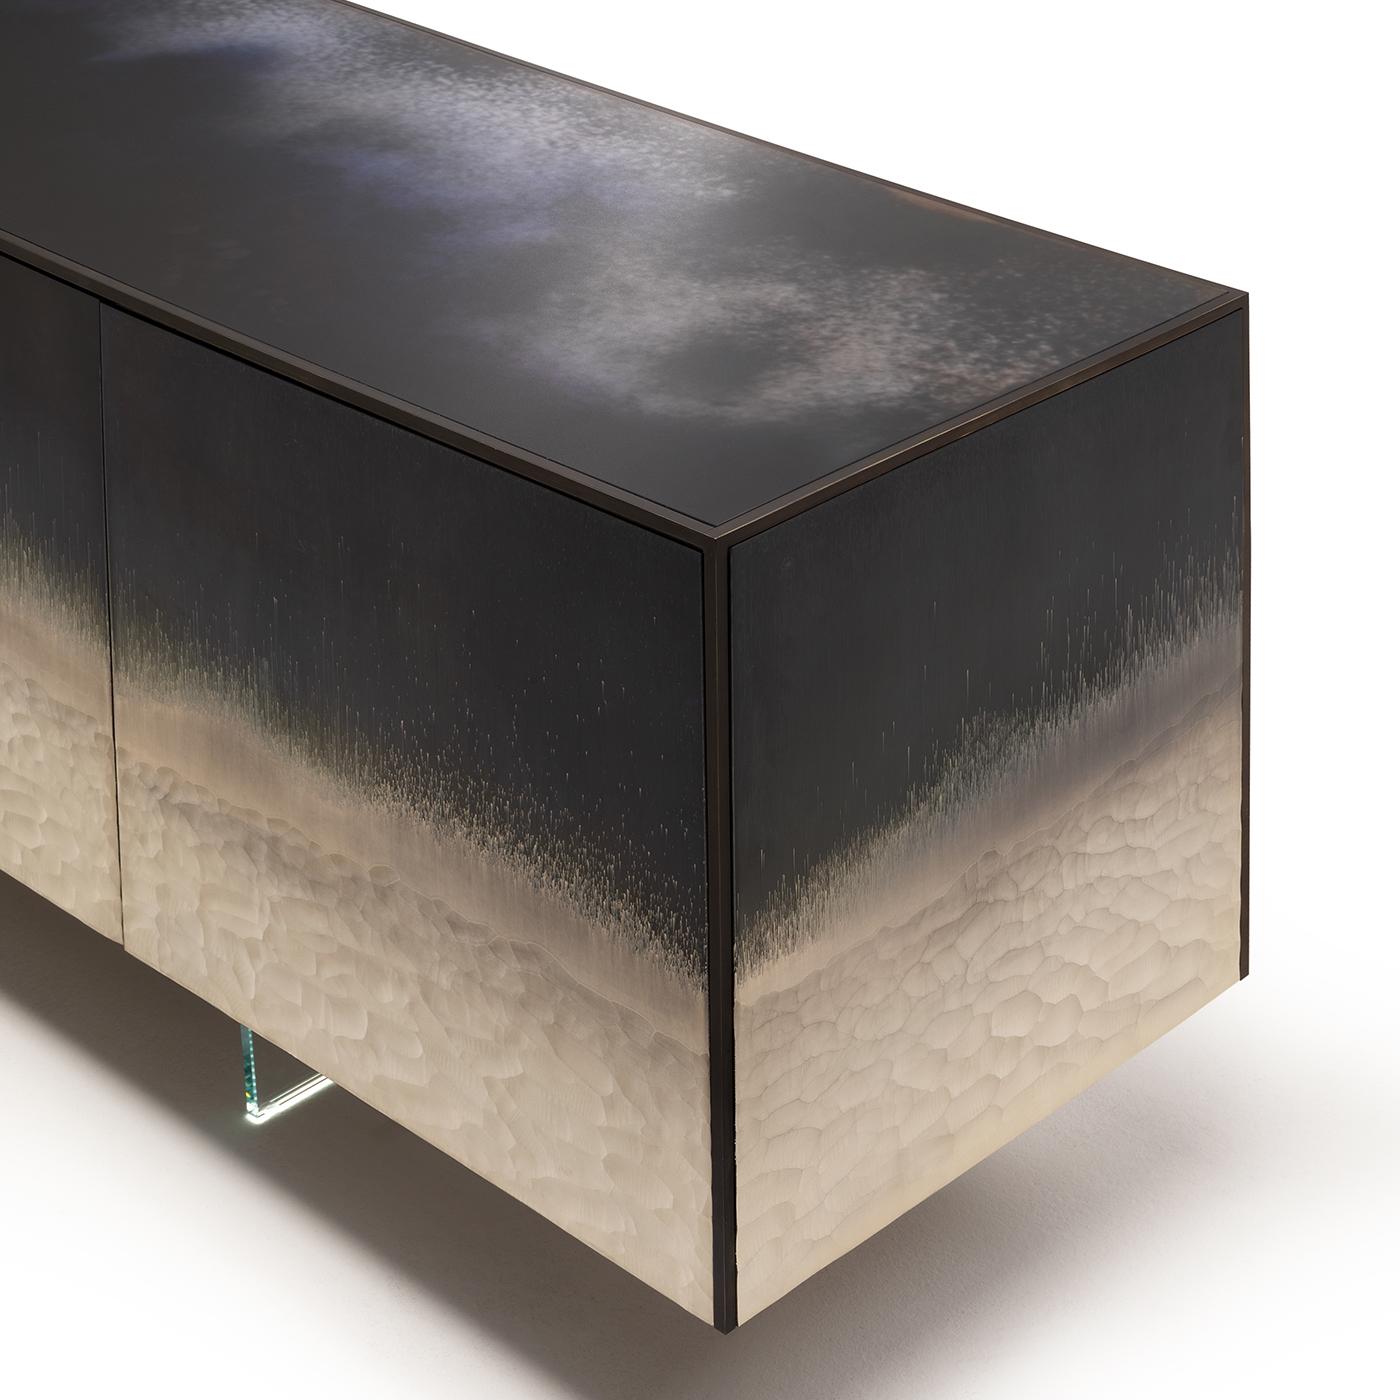 Struktur aus Esche furniertem Sperrholz mit Metallic-Lackierung in Titan. Massives Metallprofil aus dunkel brüniertem Messing. Türen, Seiten und Deckel mit Stromboli-Finish verziert. Vier Türen, innen ein extra klarer Glasboden mit abgeschrägter